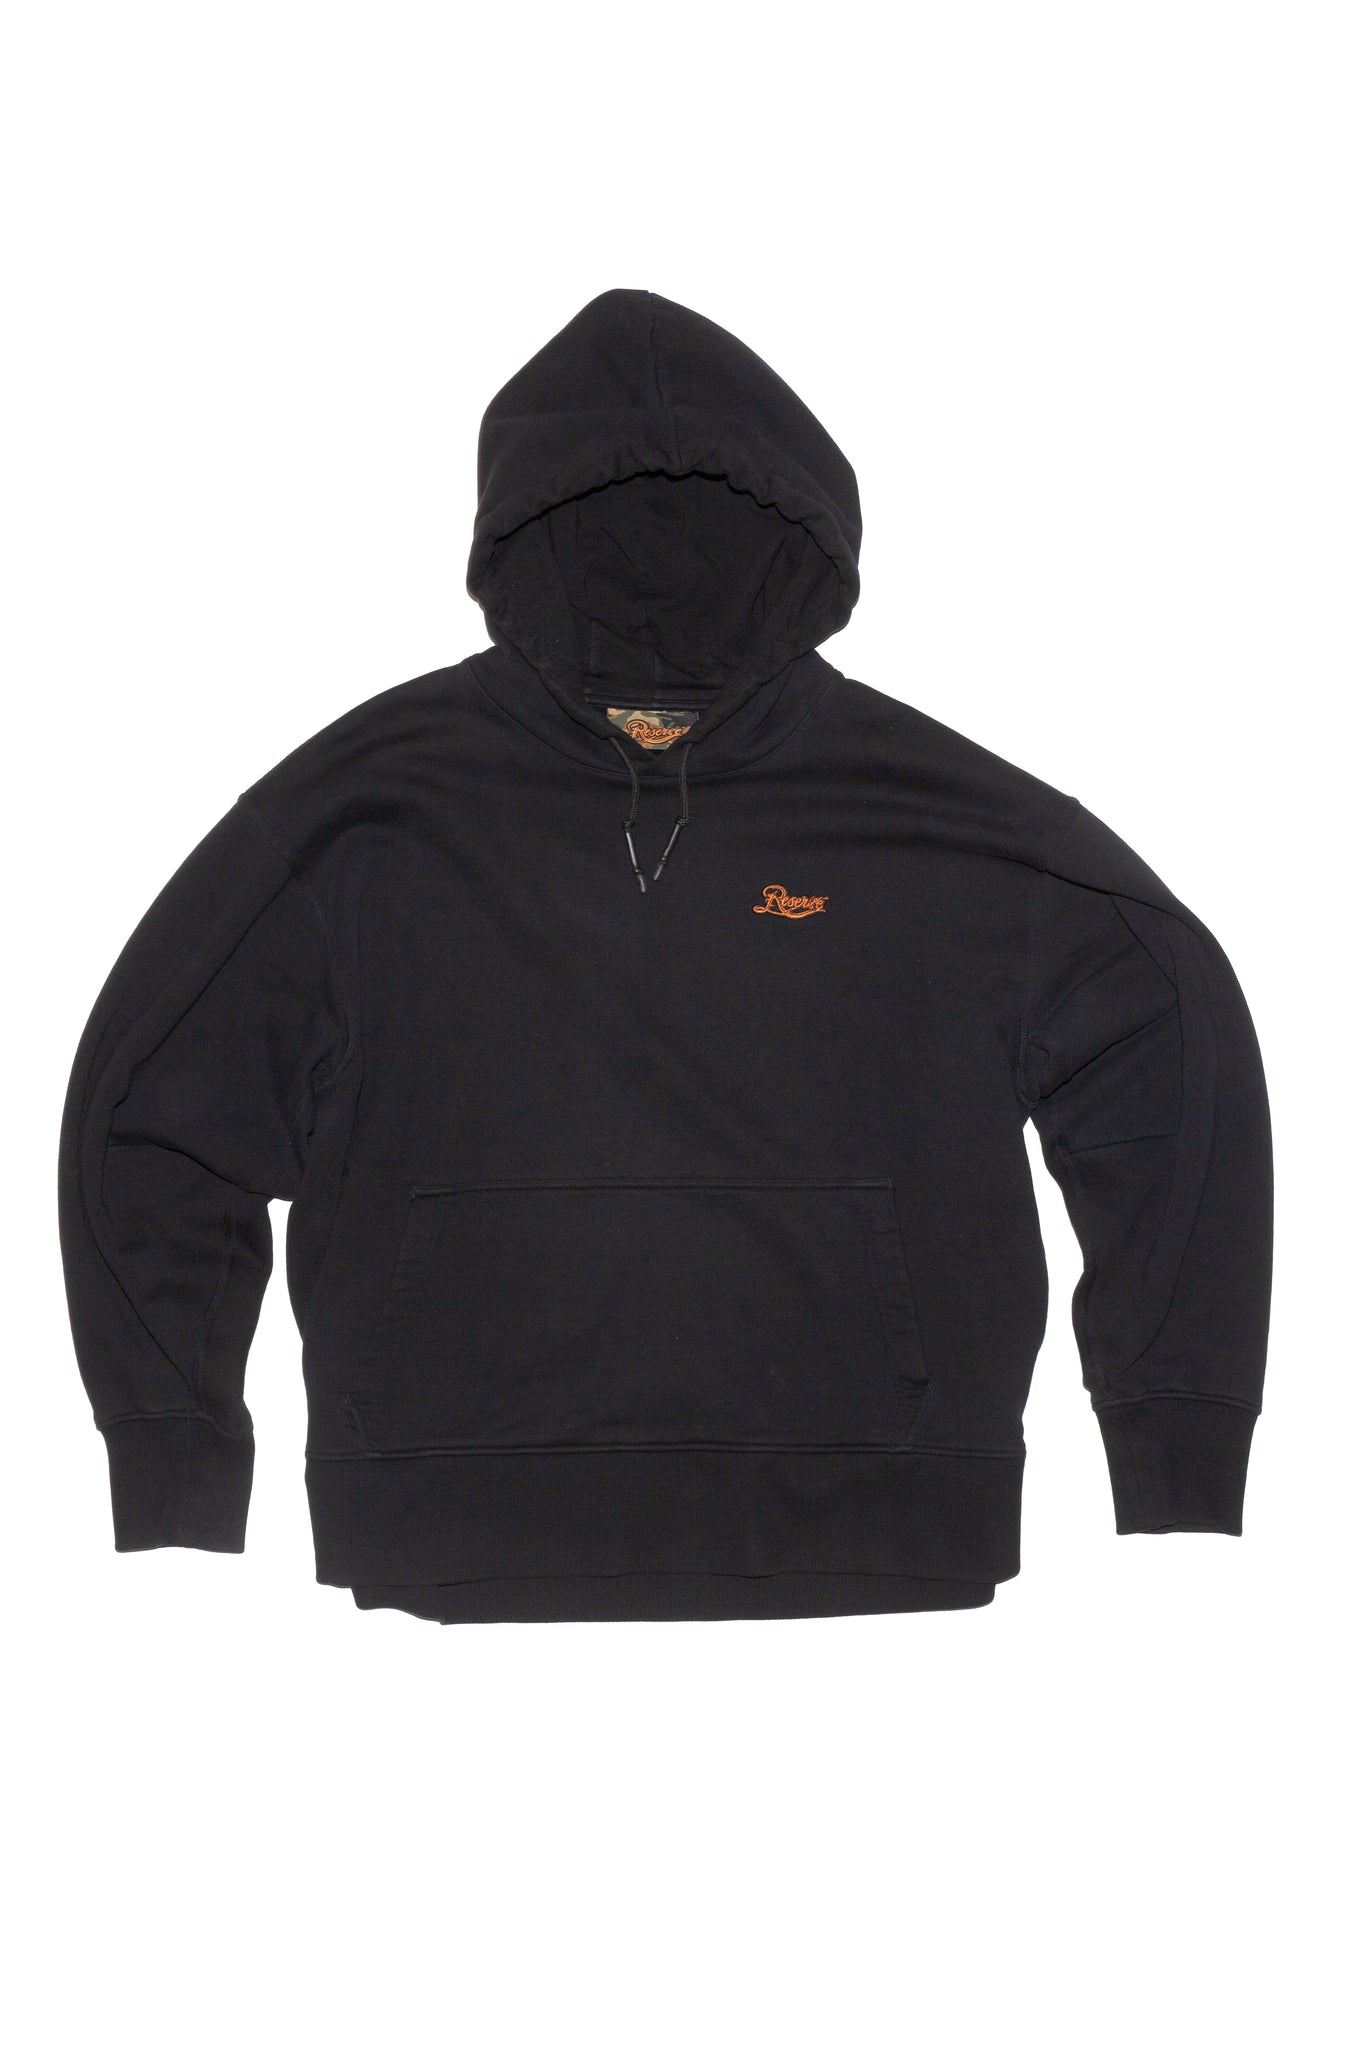 hoodie logo front black